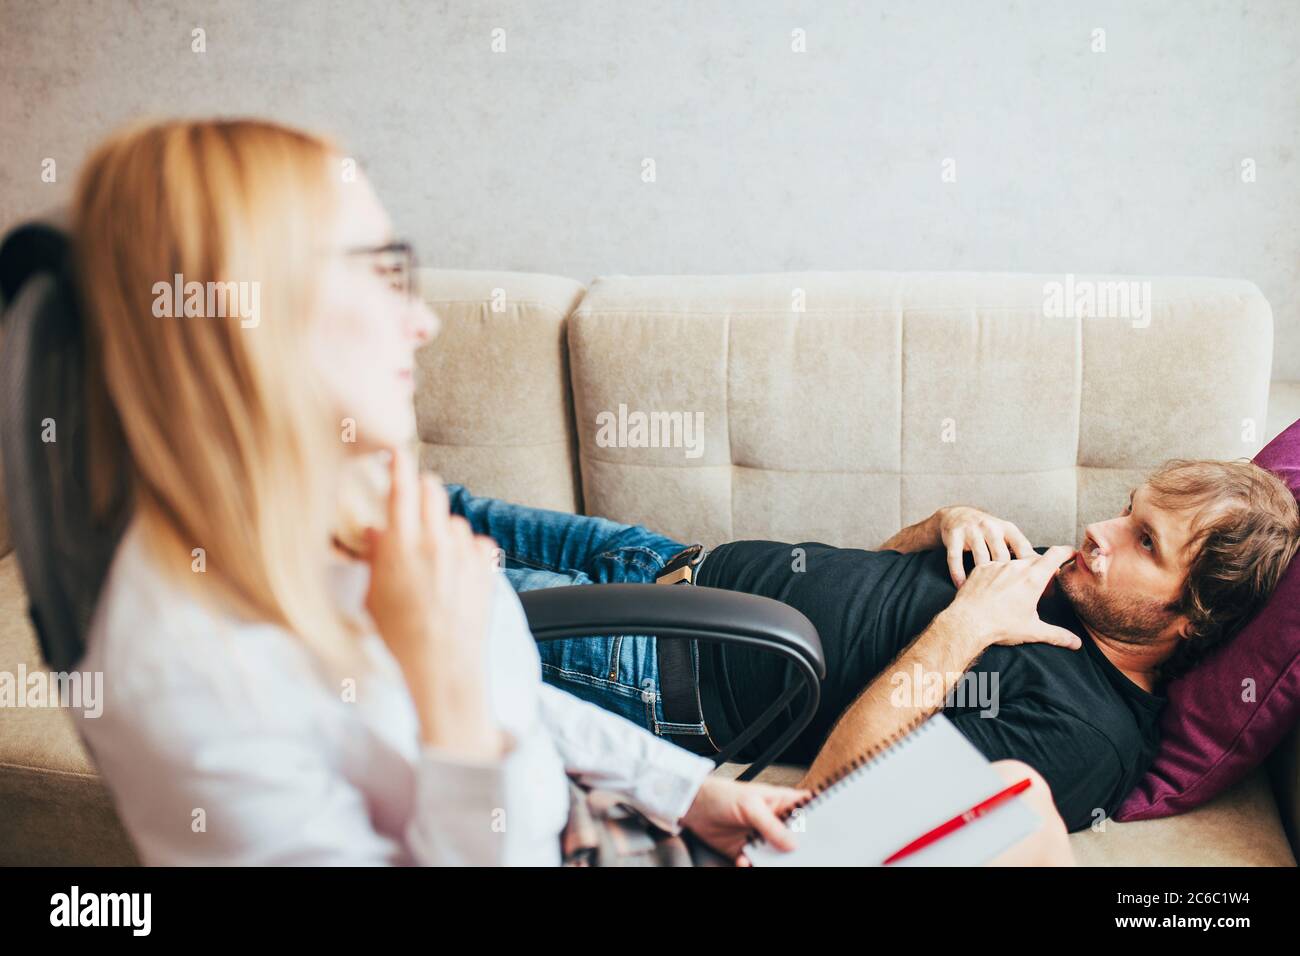 Kaukasischer männlicher Patient liegt auf einer Couch in einem Psychologiebüro - psychologische Beratung - Behandlung für Alkoholismus und Drogenabhängigkeit Stockfoto